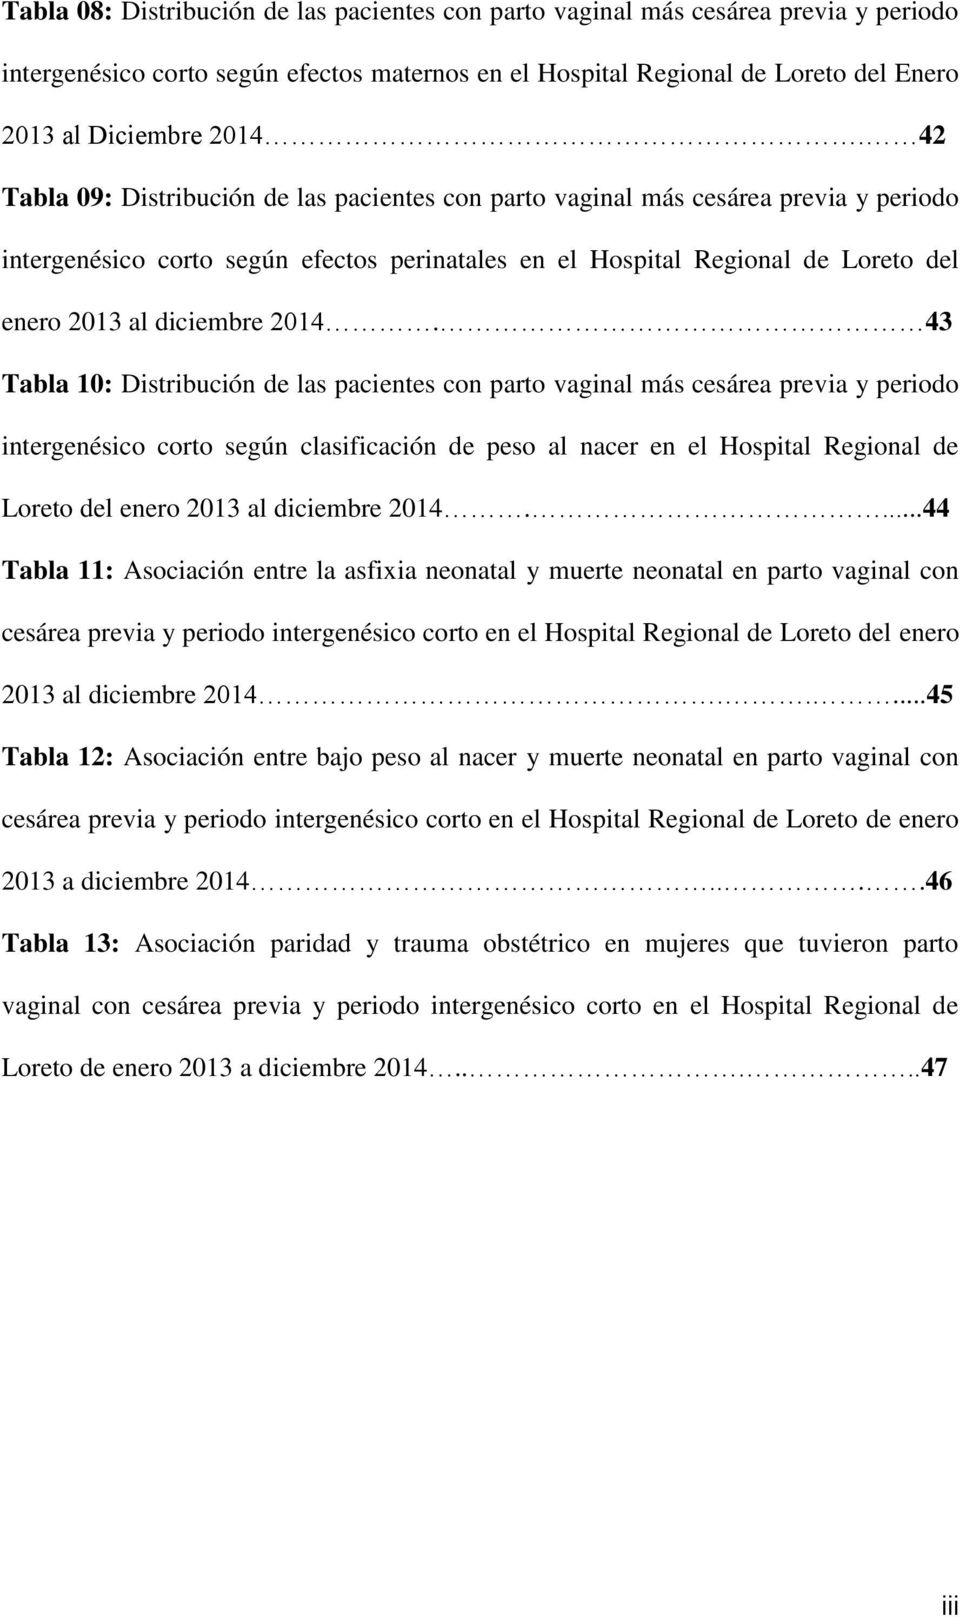 2014. 43 Tabla 10: Distribución de las pacientes con parto vaginal más cesárea previa y periodo intergenésico corto según clasificación de peso al nacer en el Hospital Regional de Loreto del enero